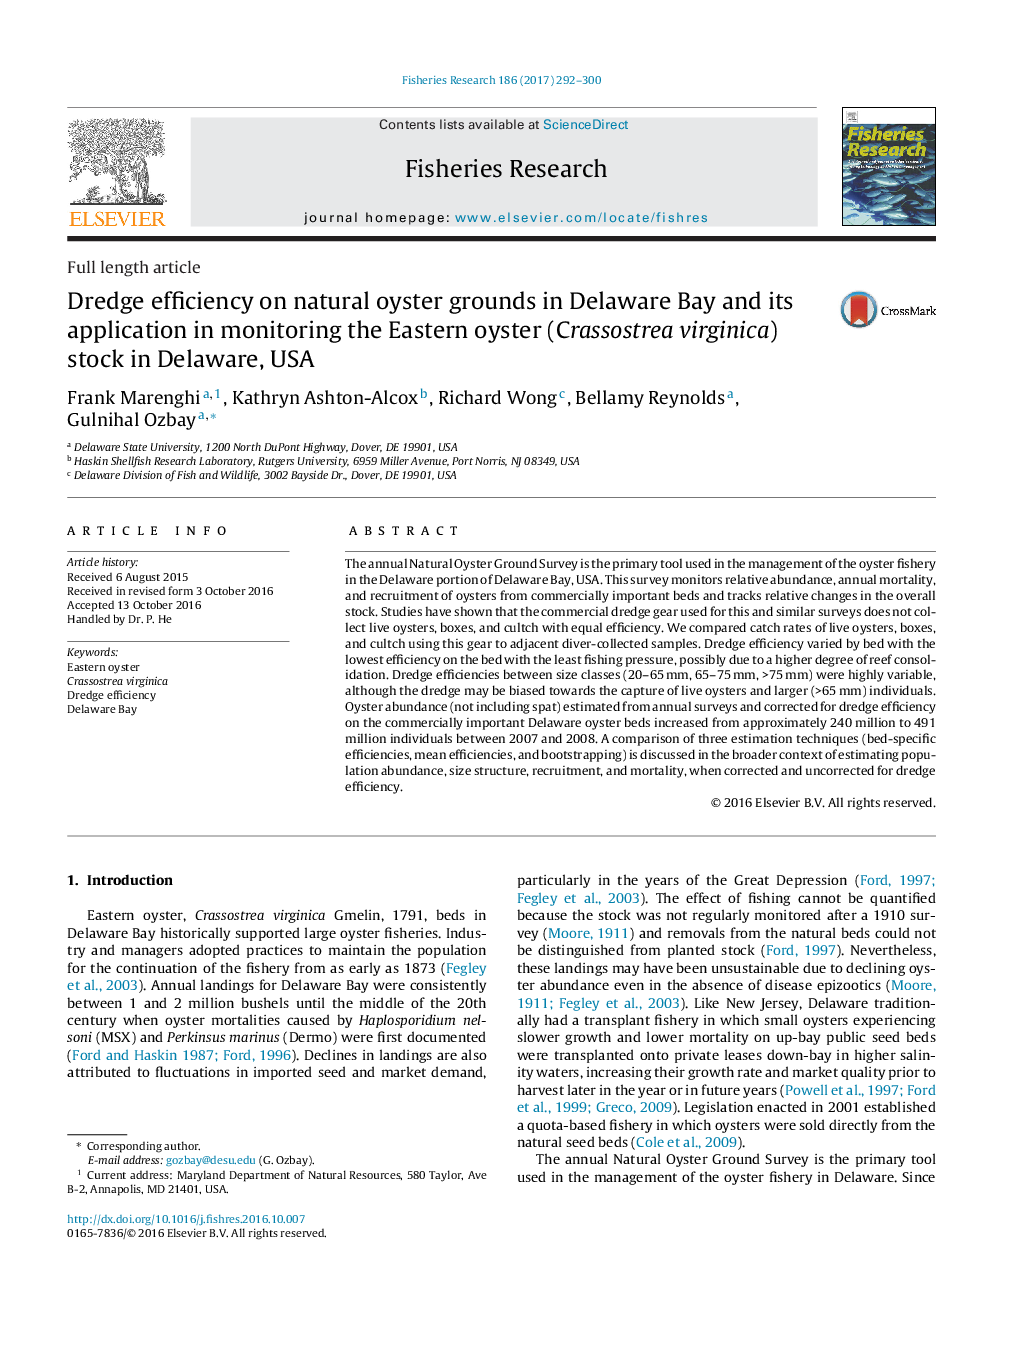 بهره وری لایروبی در زمینه های اویستر طبیعی در خلیج دلاویر و کاربرد آن در نظارت بر ذخایر اویستر شرقی (Crassostrea virginica) در دلاور، ایالات متحده